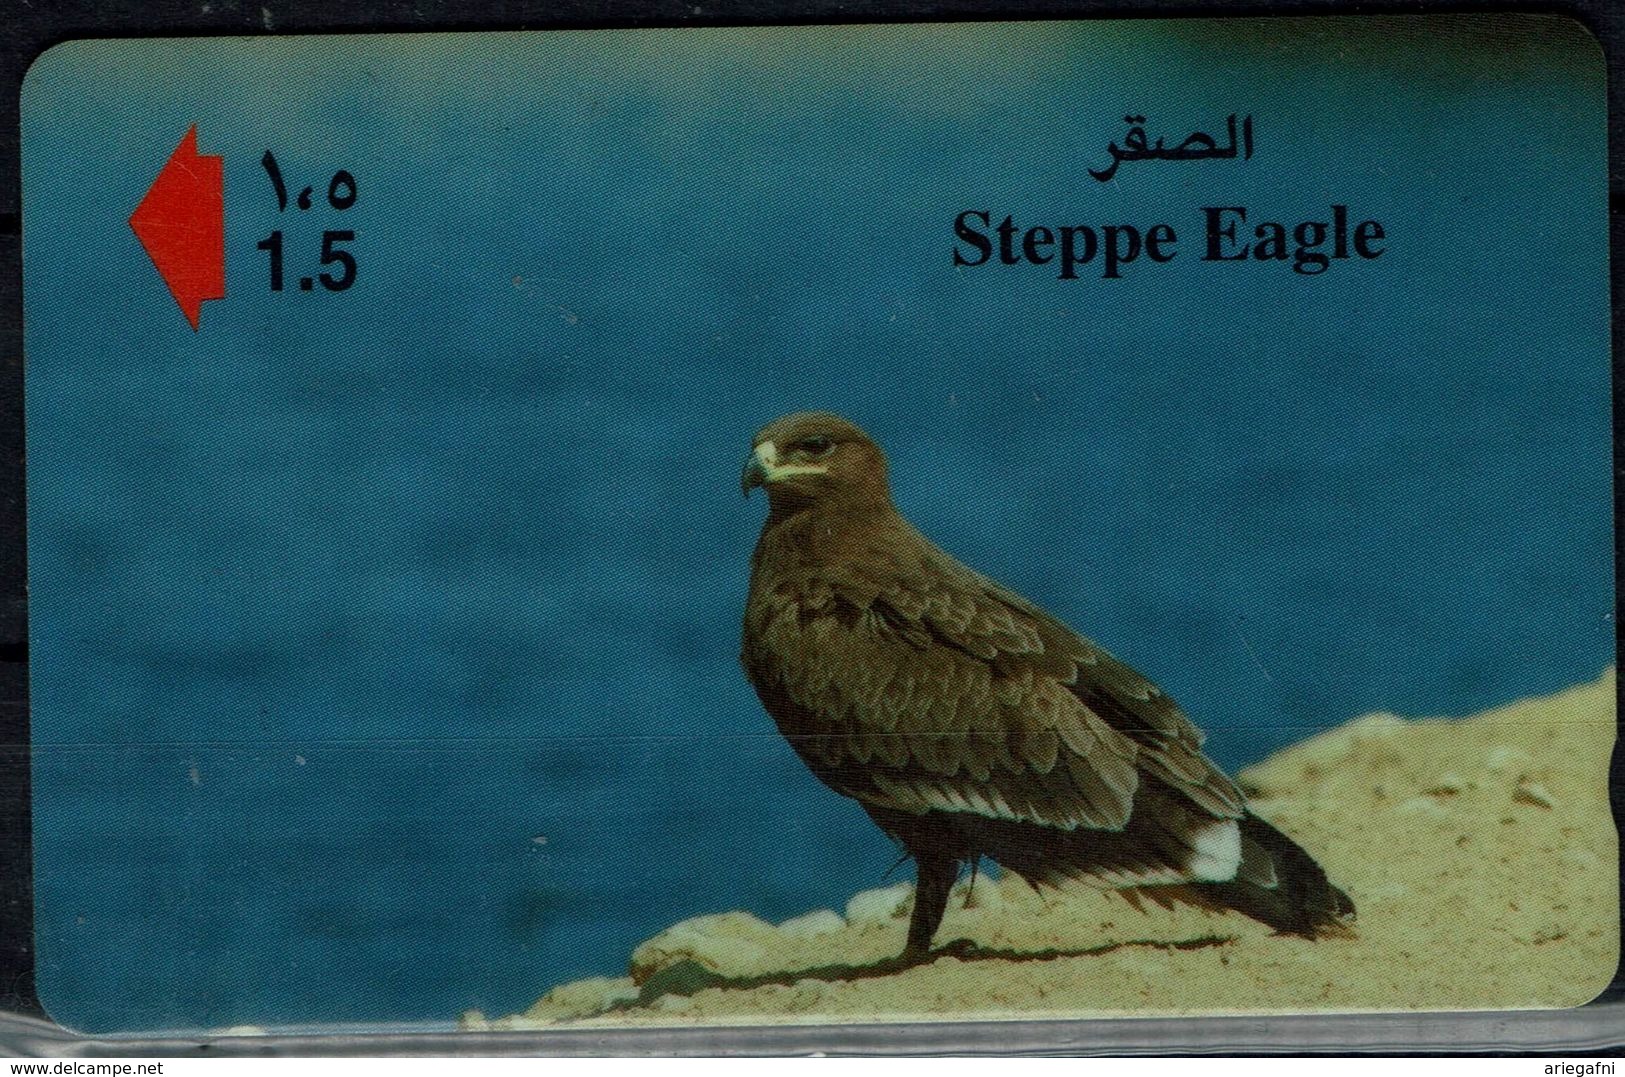 OMAN 2002 PHONECARD BIRDS EAGLES USED VF!! - Eagles & Birds Of Prey